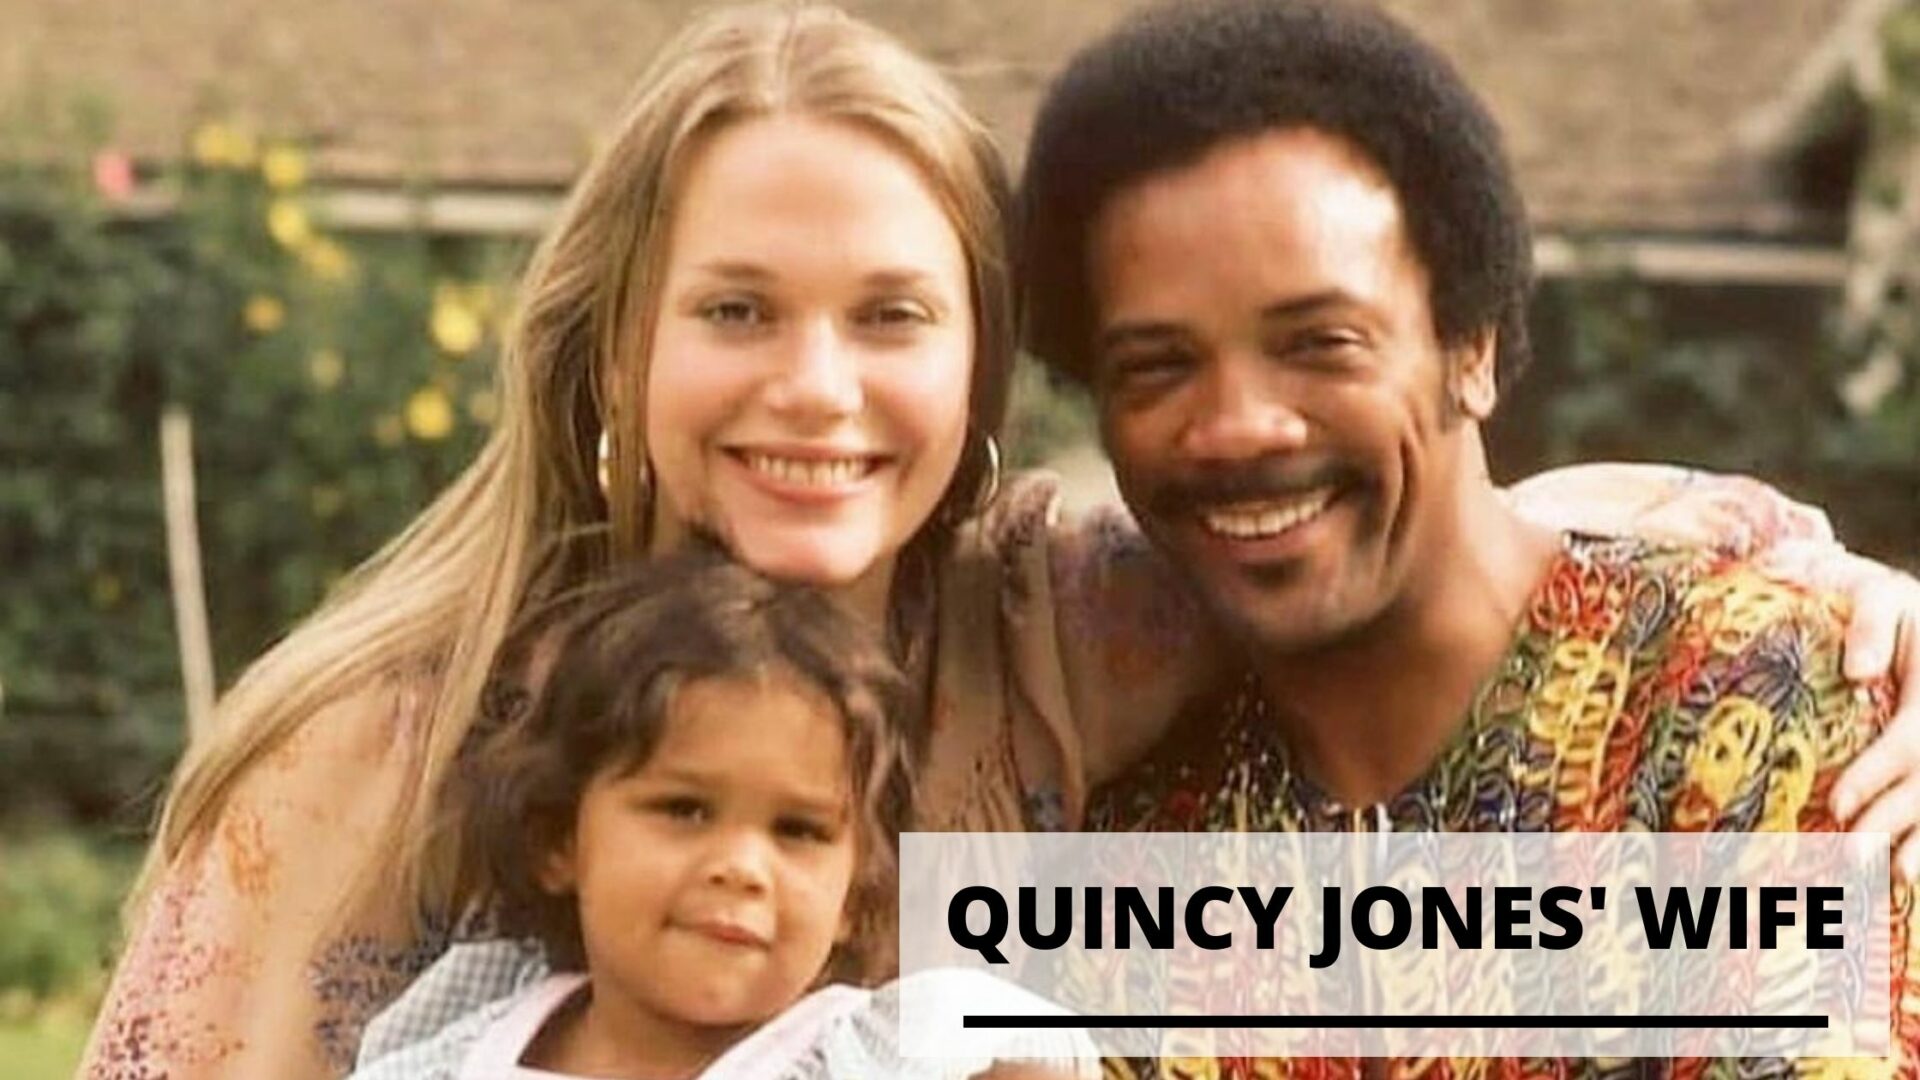 Who is the Wife of Quincy Jones?